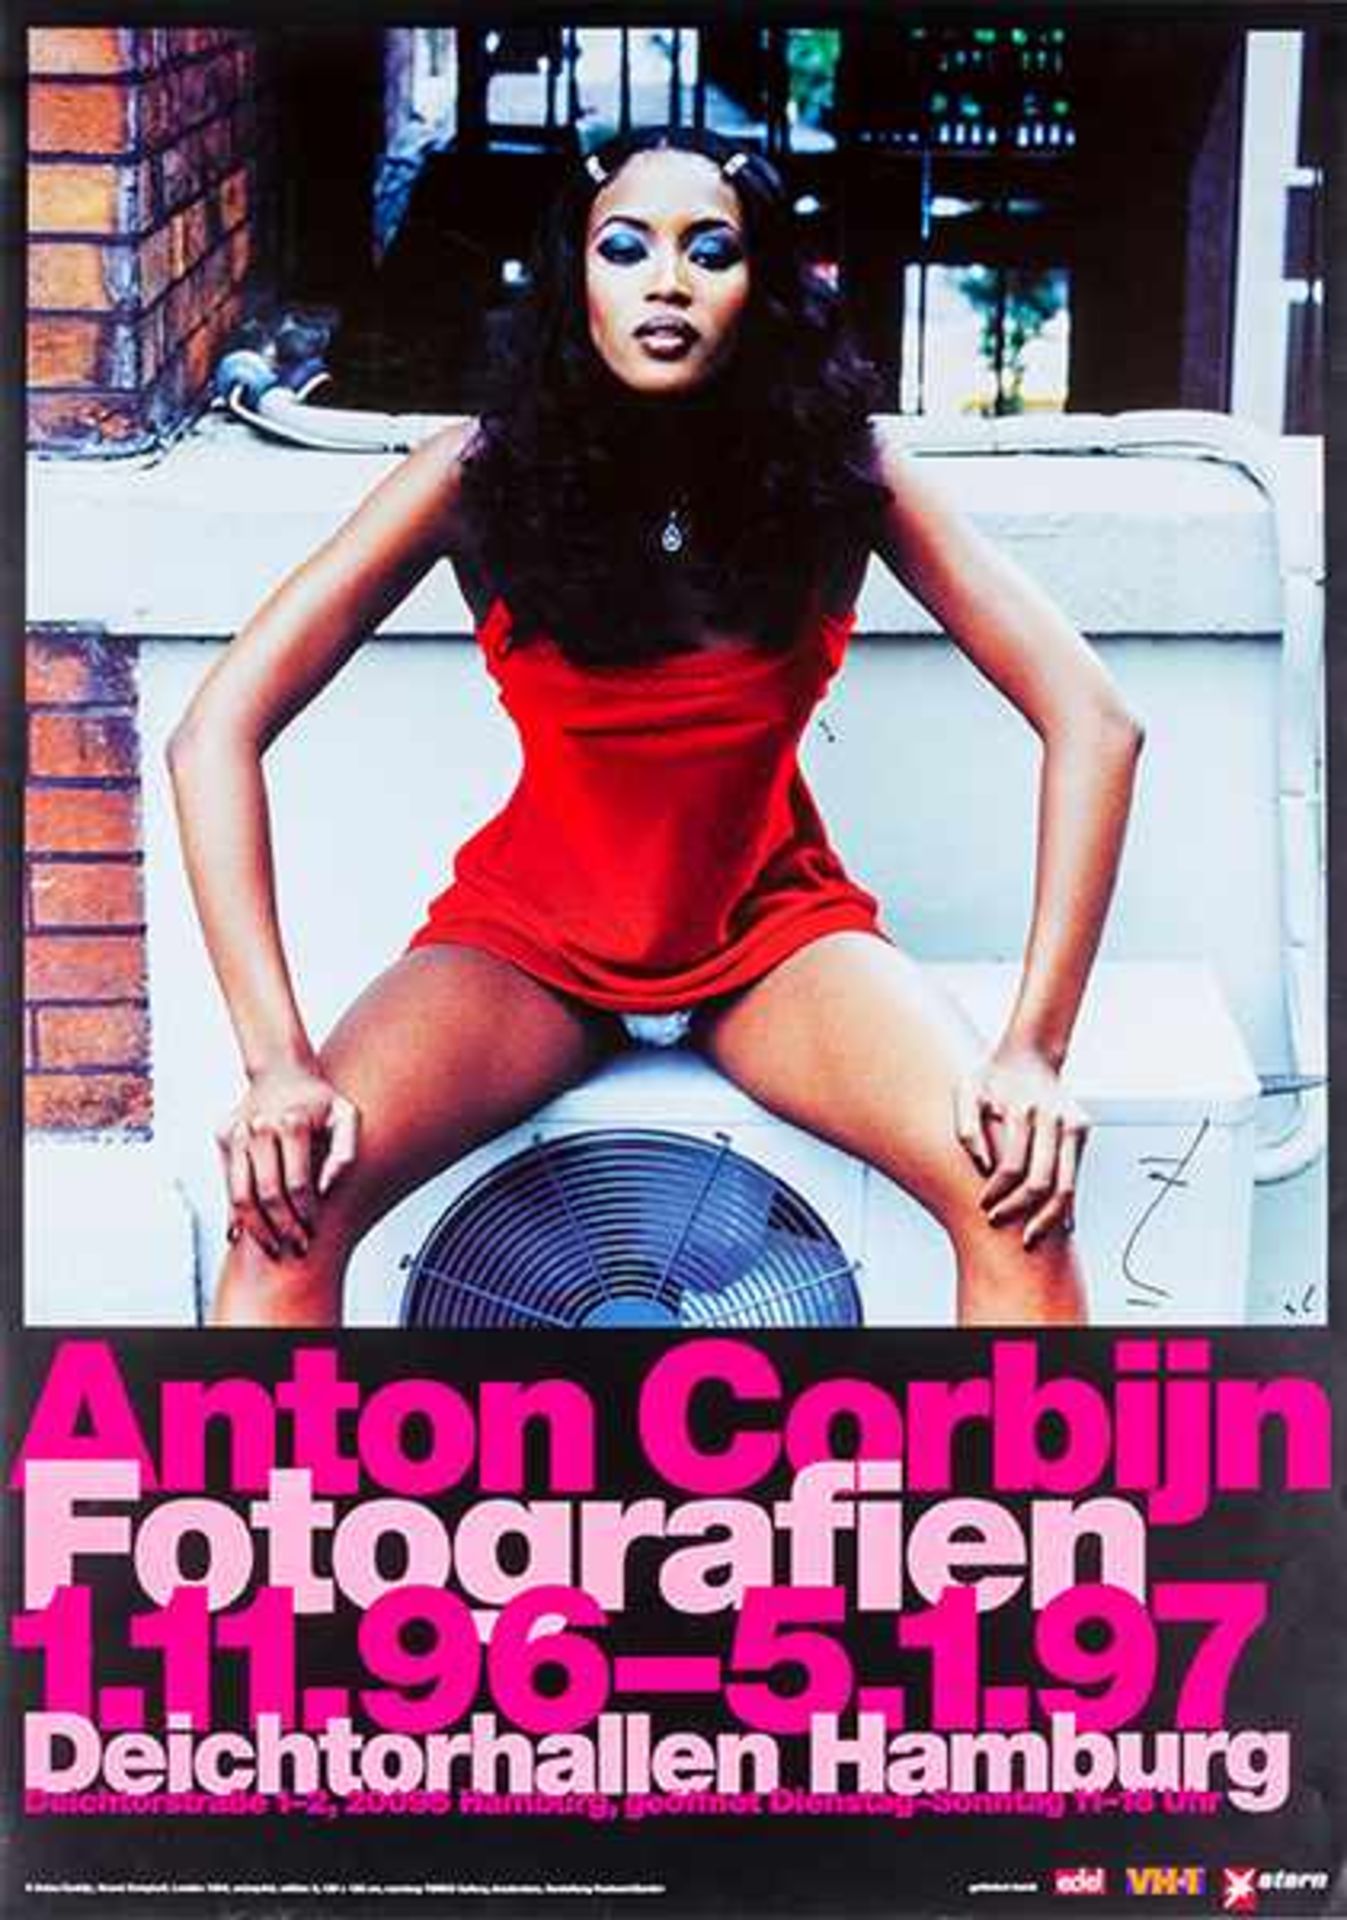 Corbijn, Anton. Naomi Campbell. Plakat zu der Ausstellung in den Deichtorhallen Hamburg 1996/97.